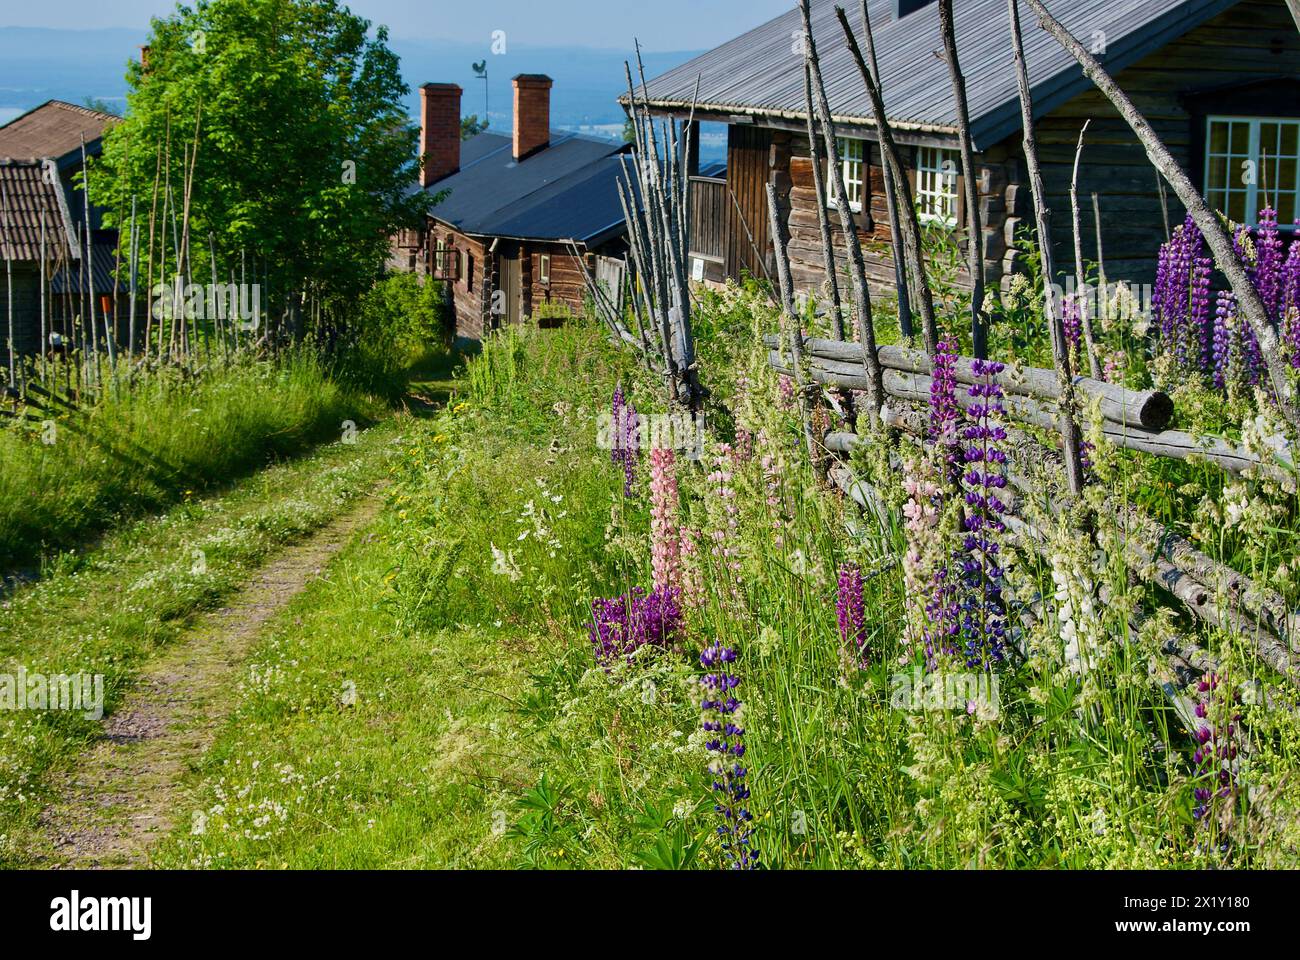 Paesaggio rurale svedese con una strada stretta tra edifici in legno con recinzioni a palo rotondo e fiori di lupino in fiore in estate. Foto Stock